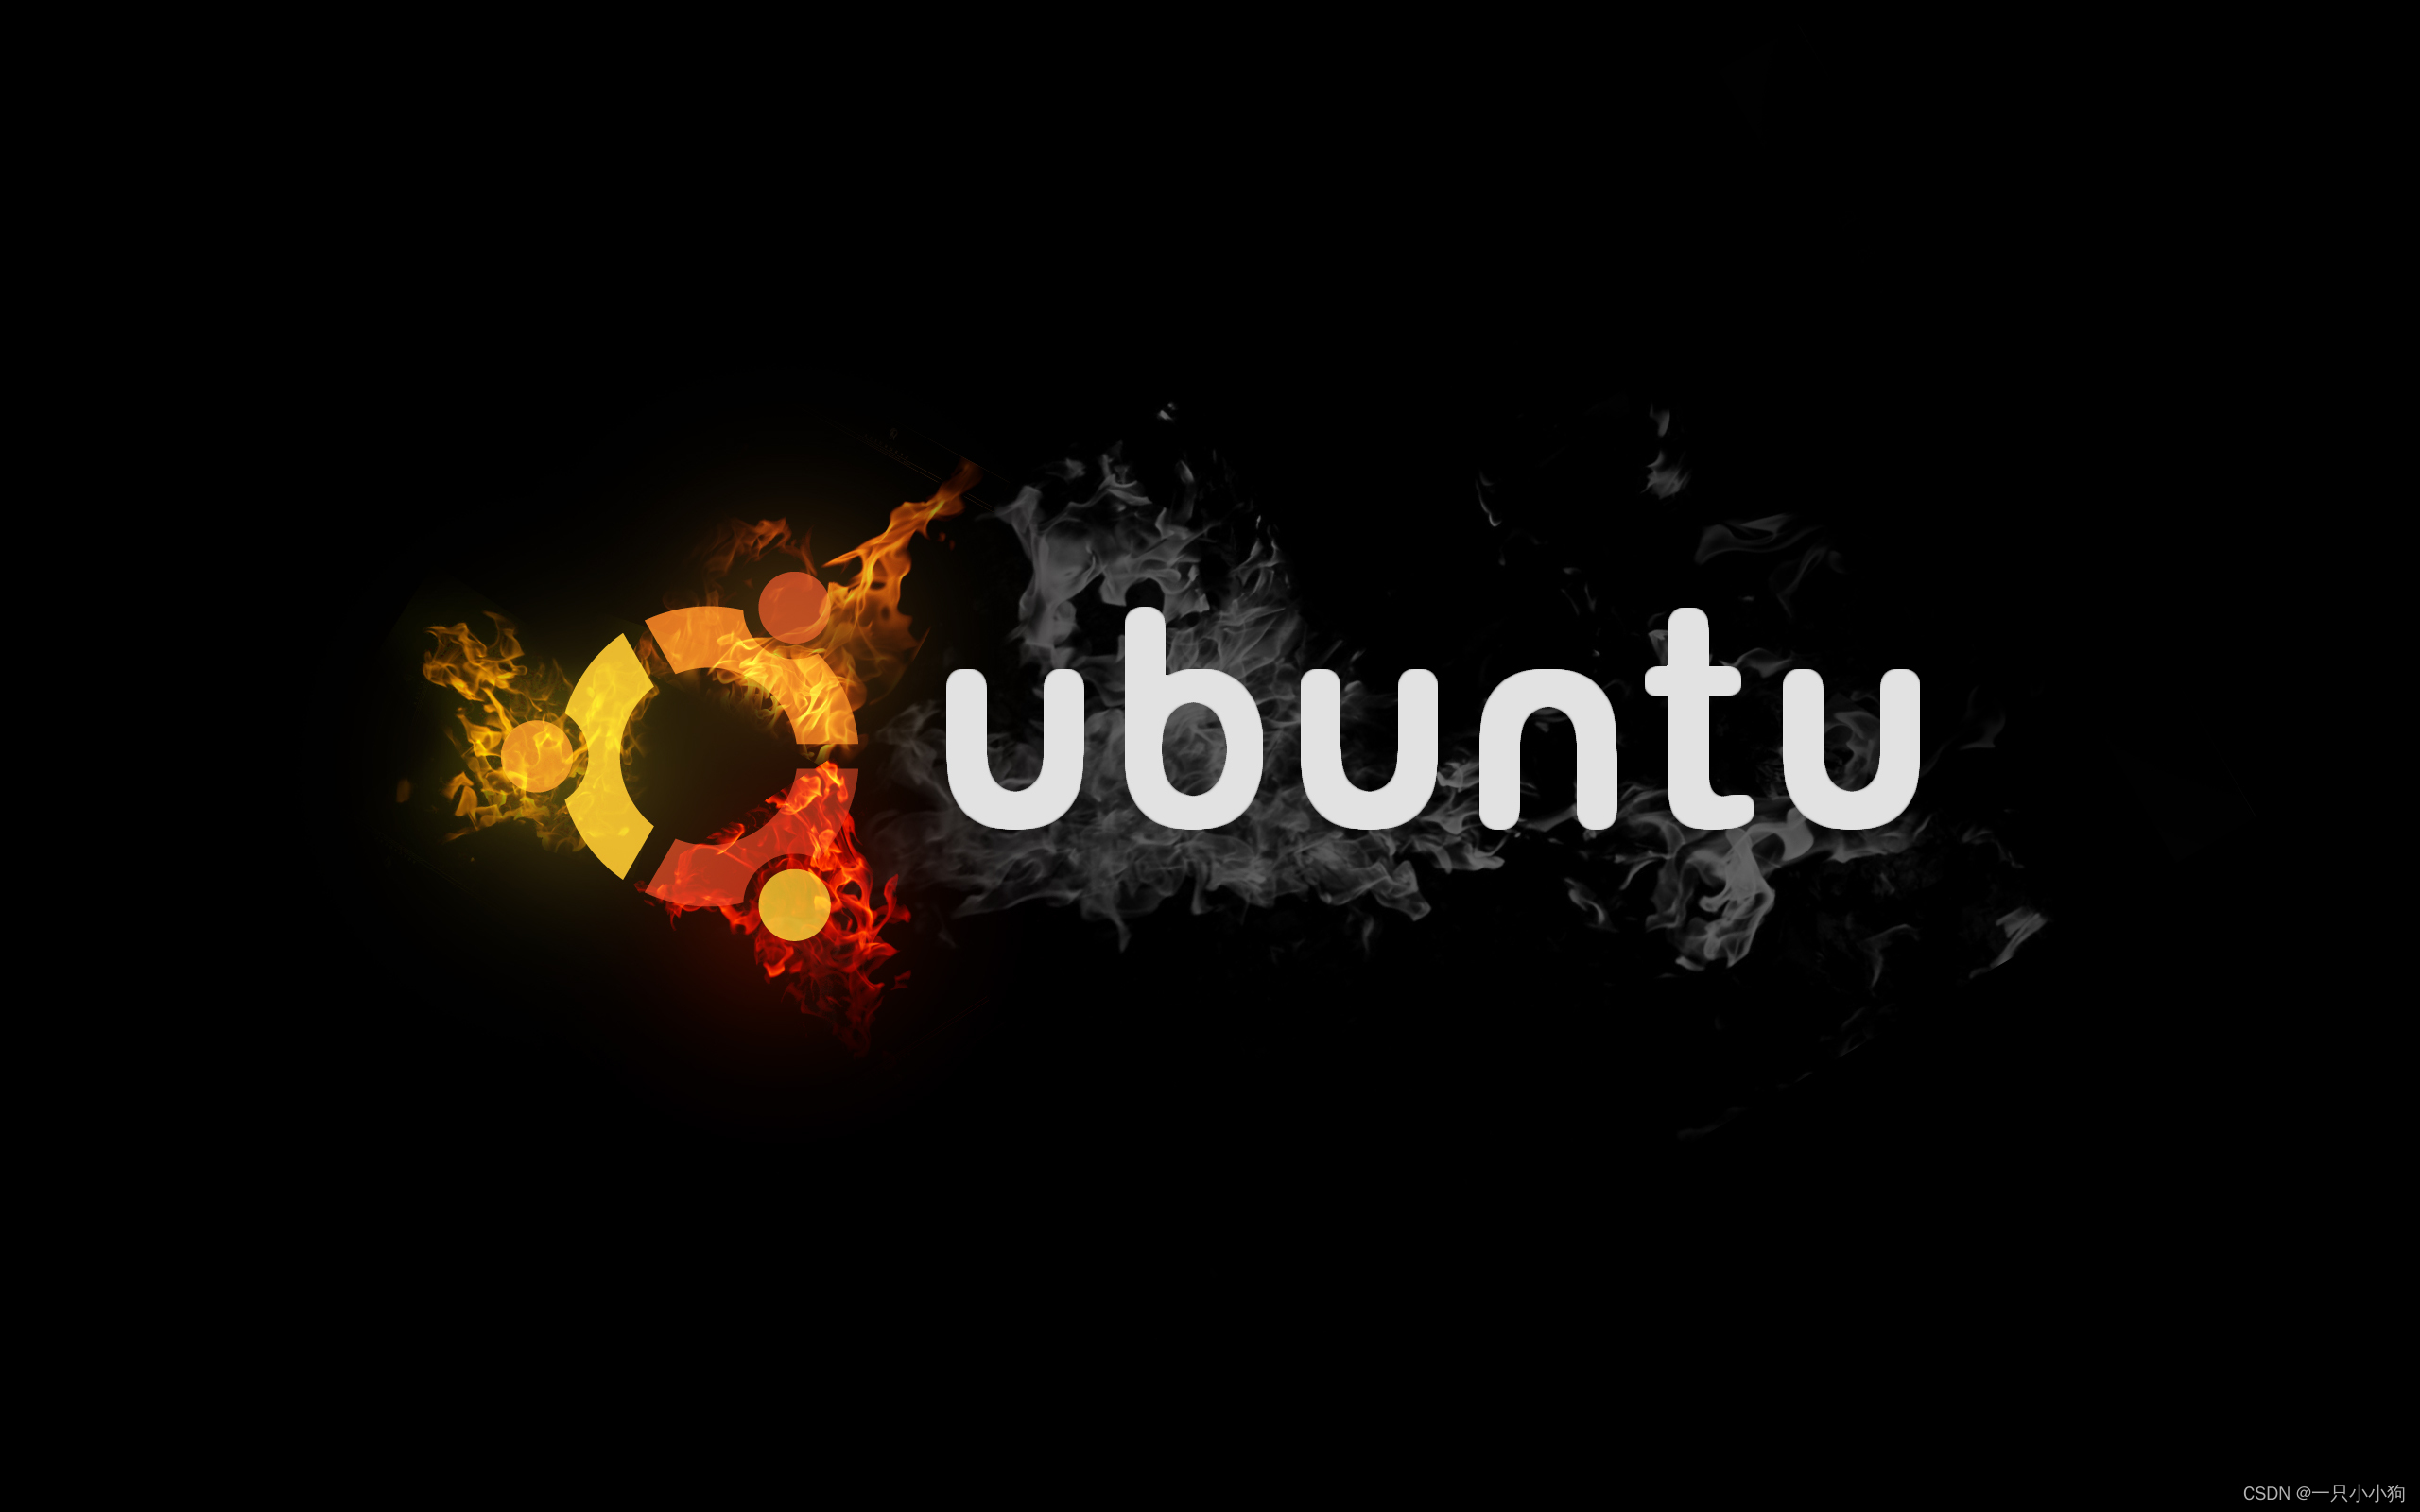 Ubuntu 下配置 java selenium chrome环境